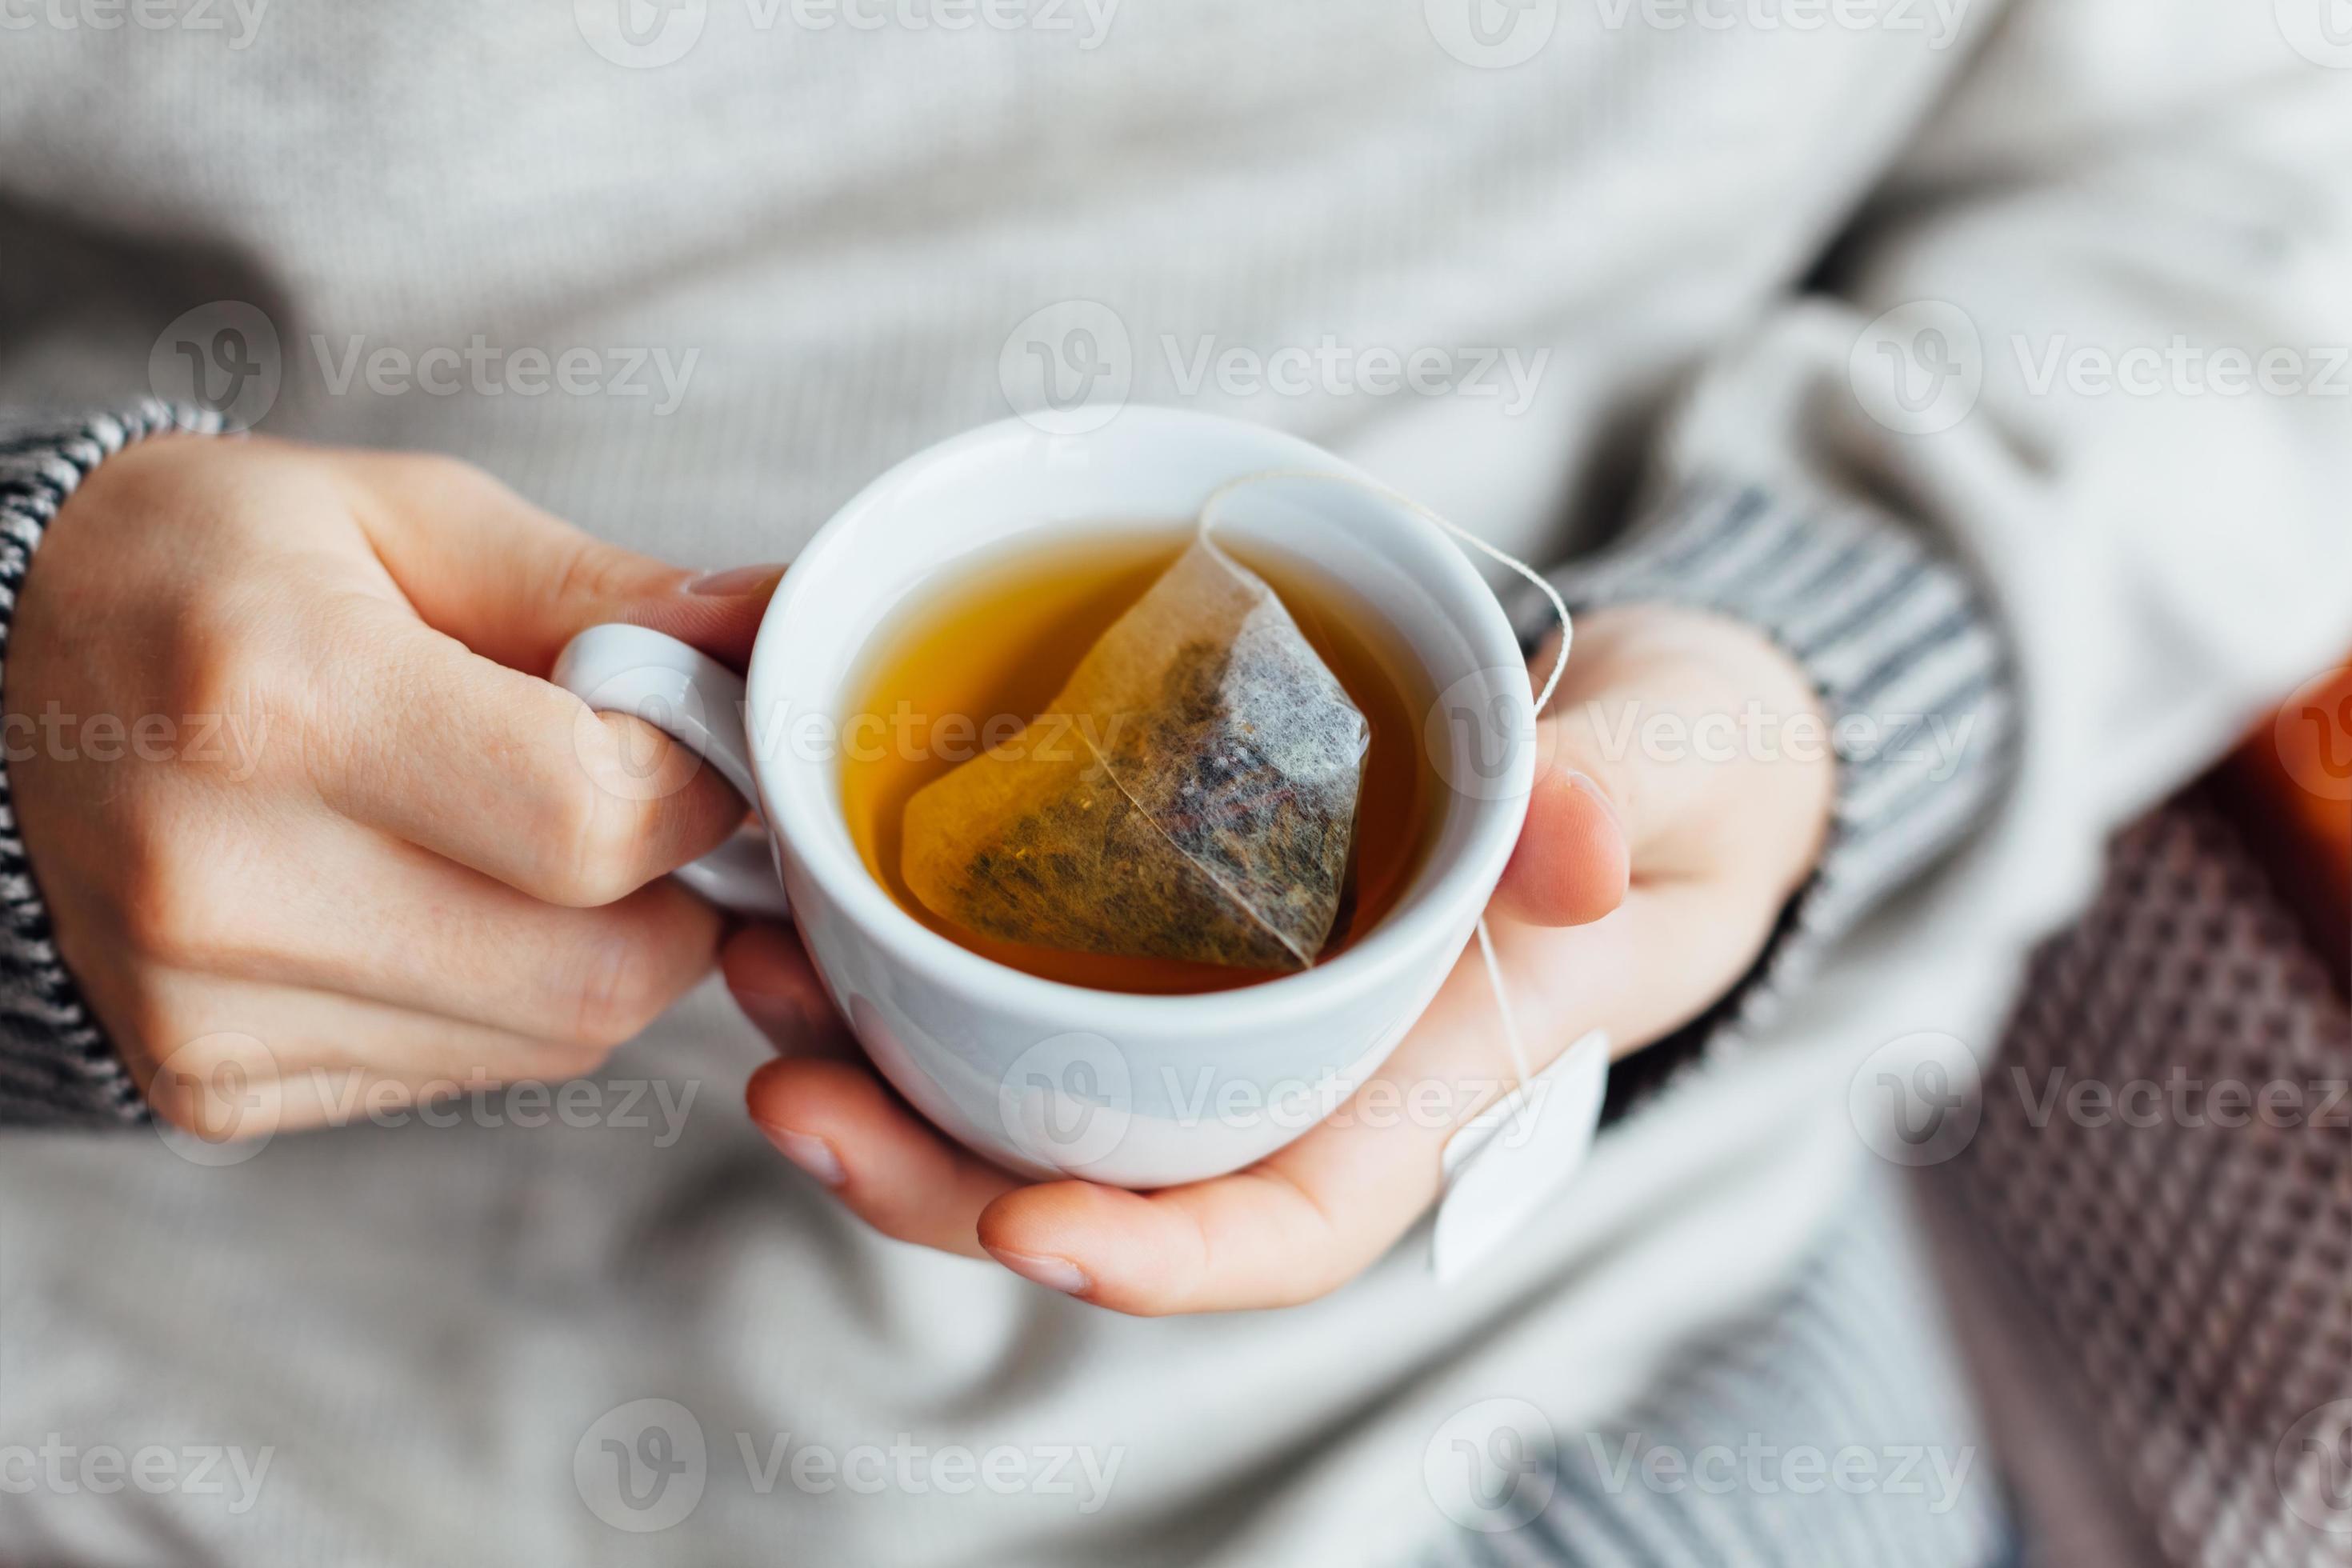 При температуре пьют горячий чай